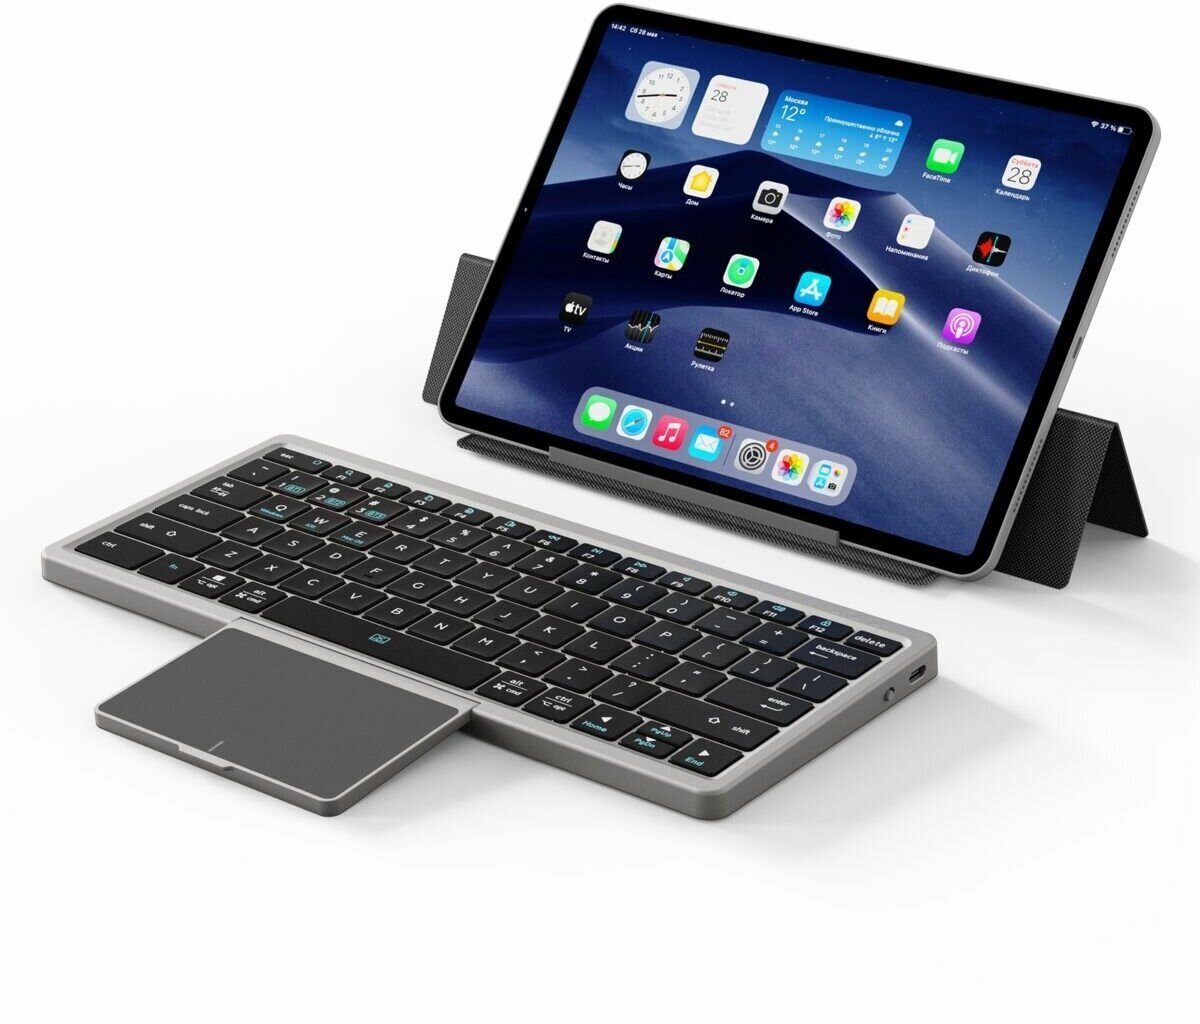 Универсальная русская Bluetooth клавиатура Dux Ducis, OK Series, для планшетов, смартфонов, компьютеров, черная